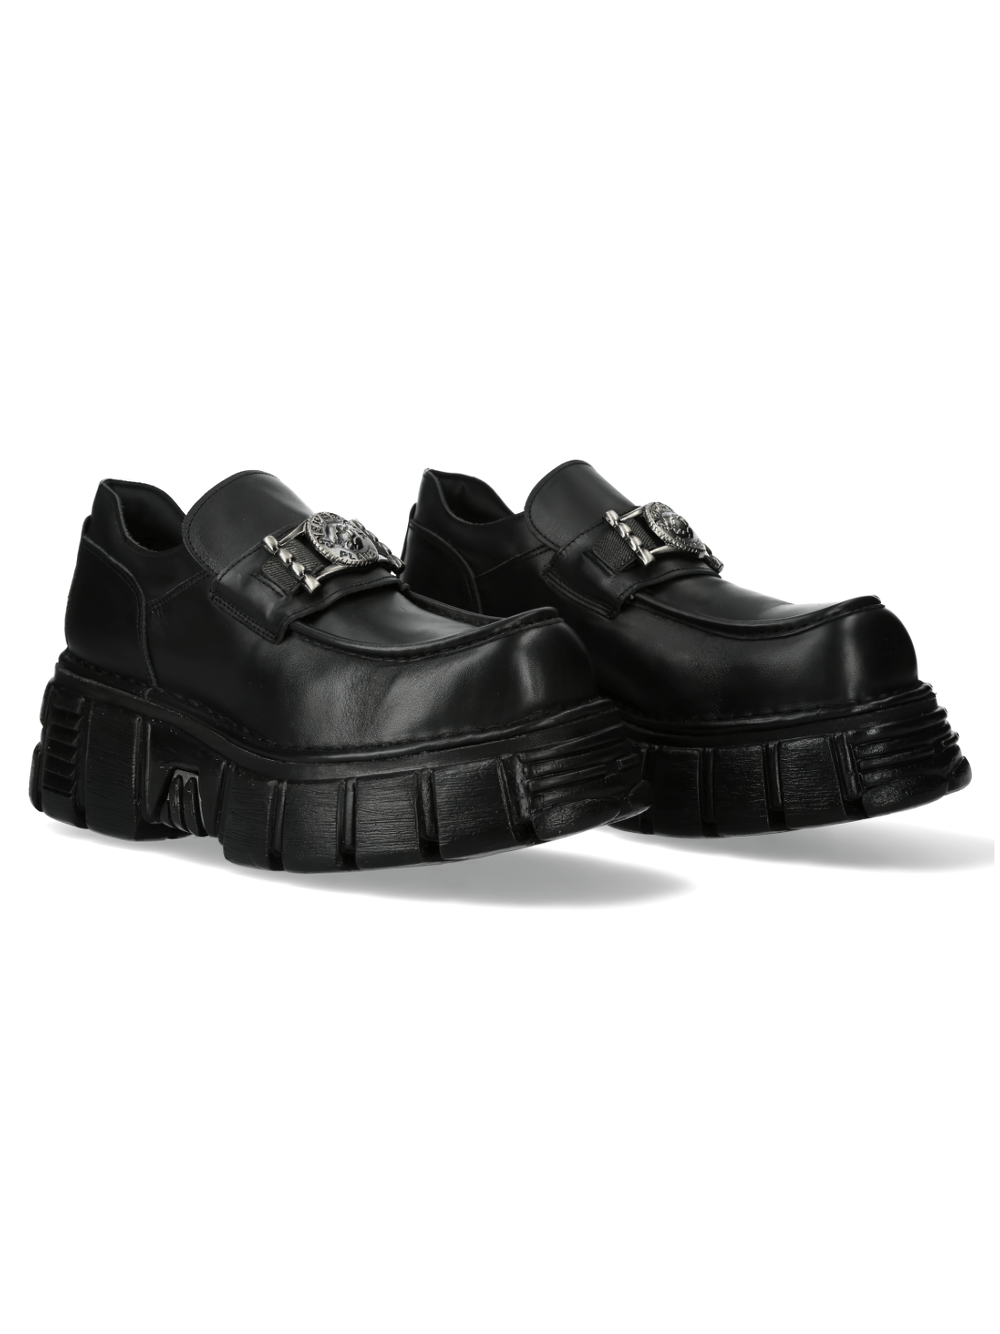 NEW ROCK Zapatos con plataforma de cuero Urban Rock con hebilla